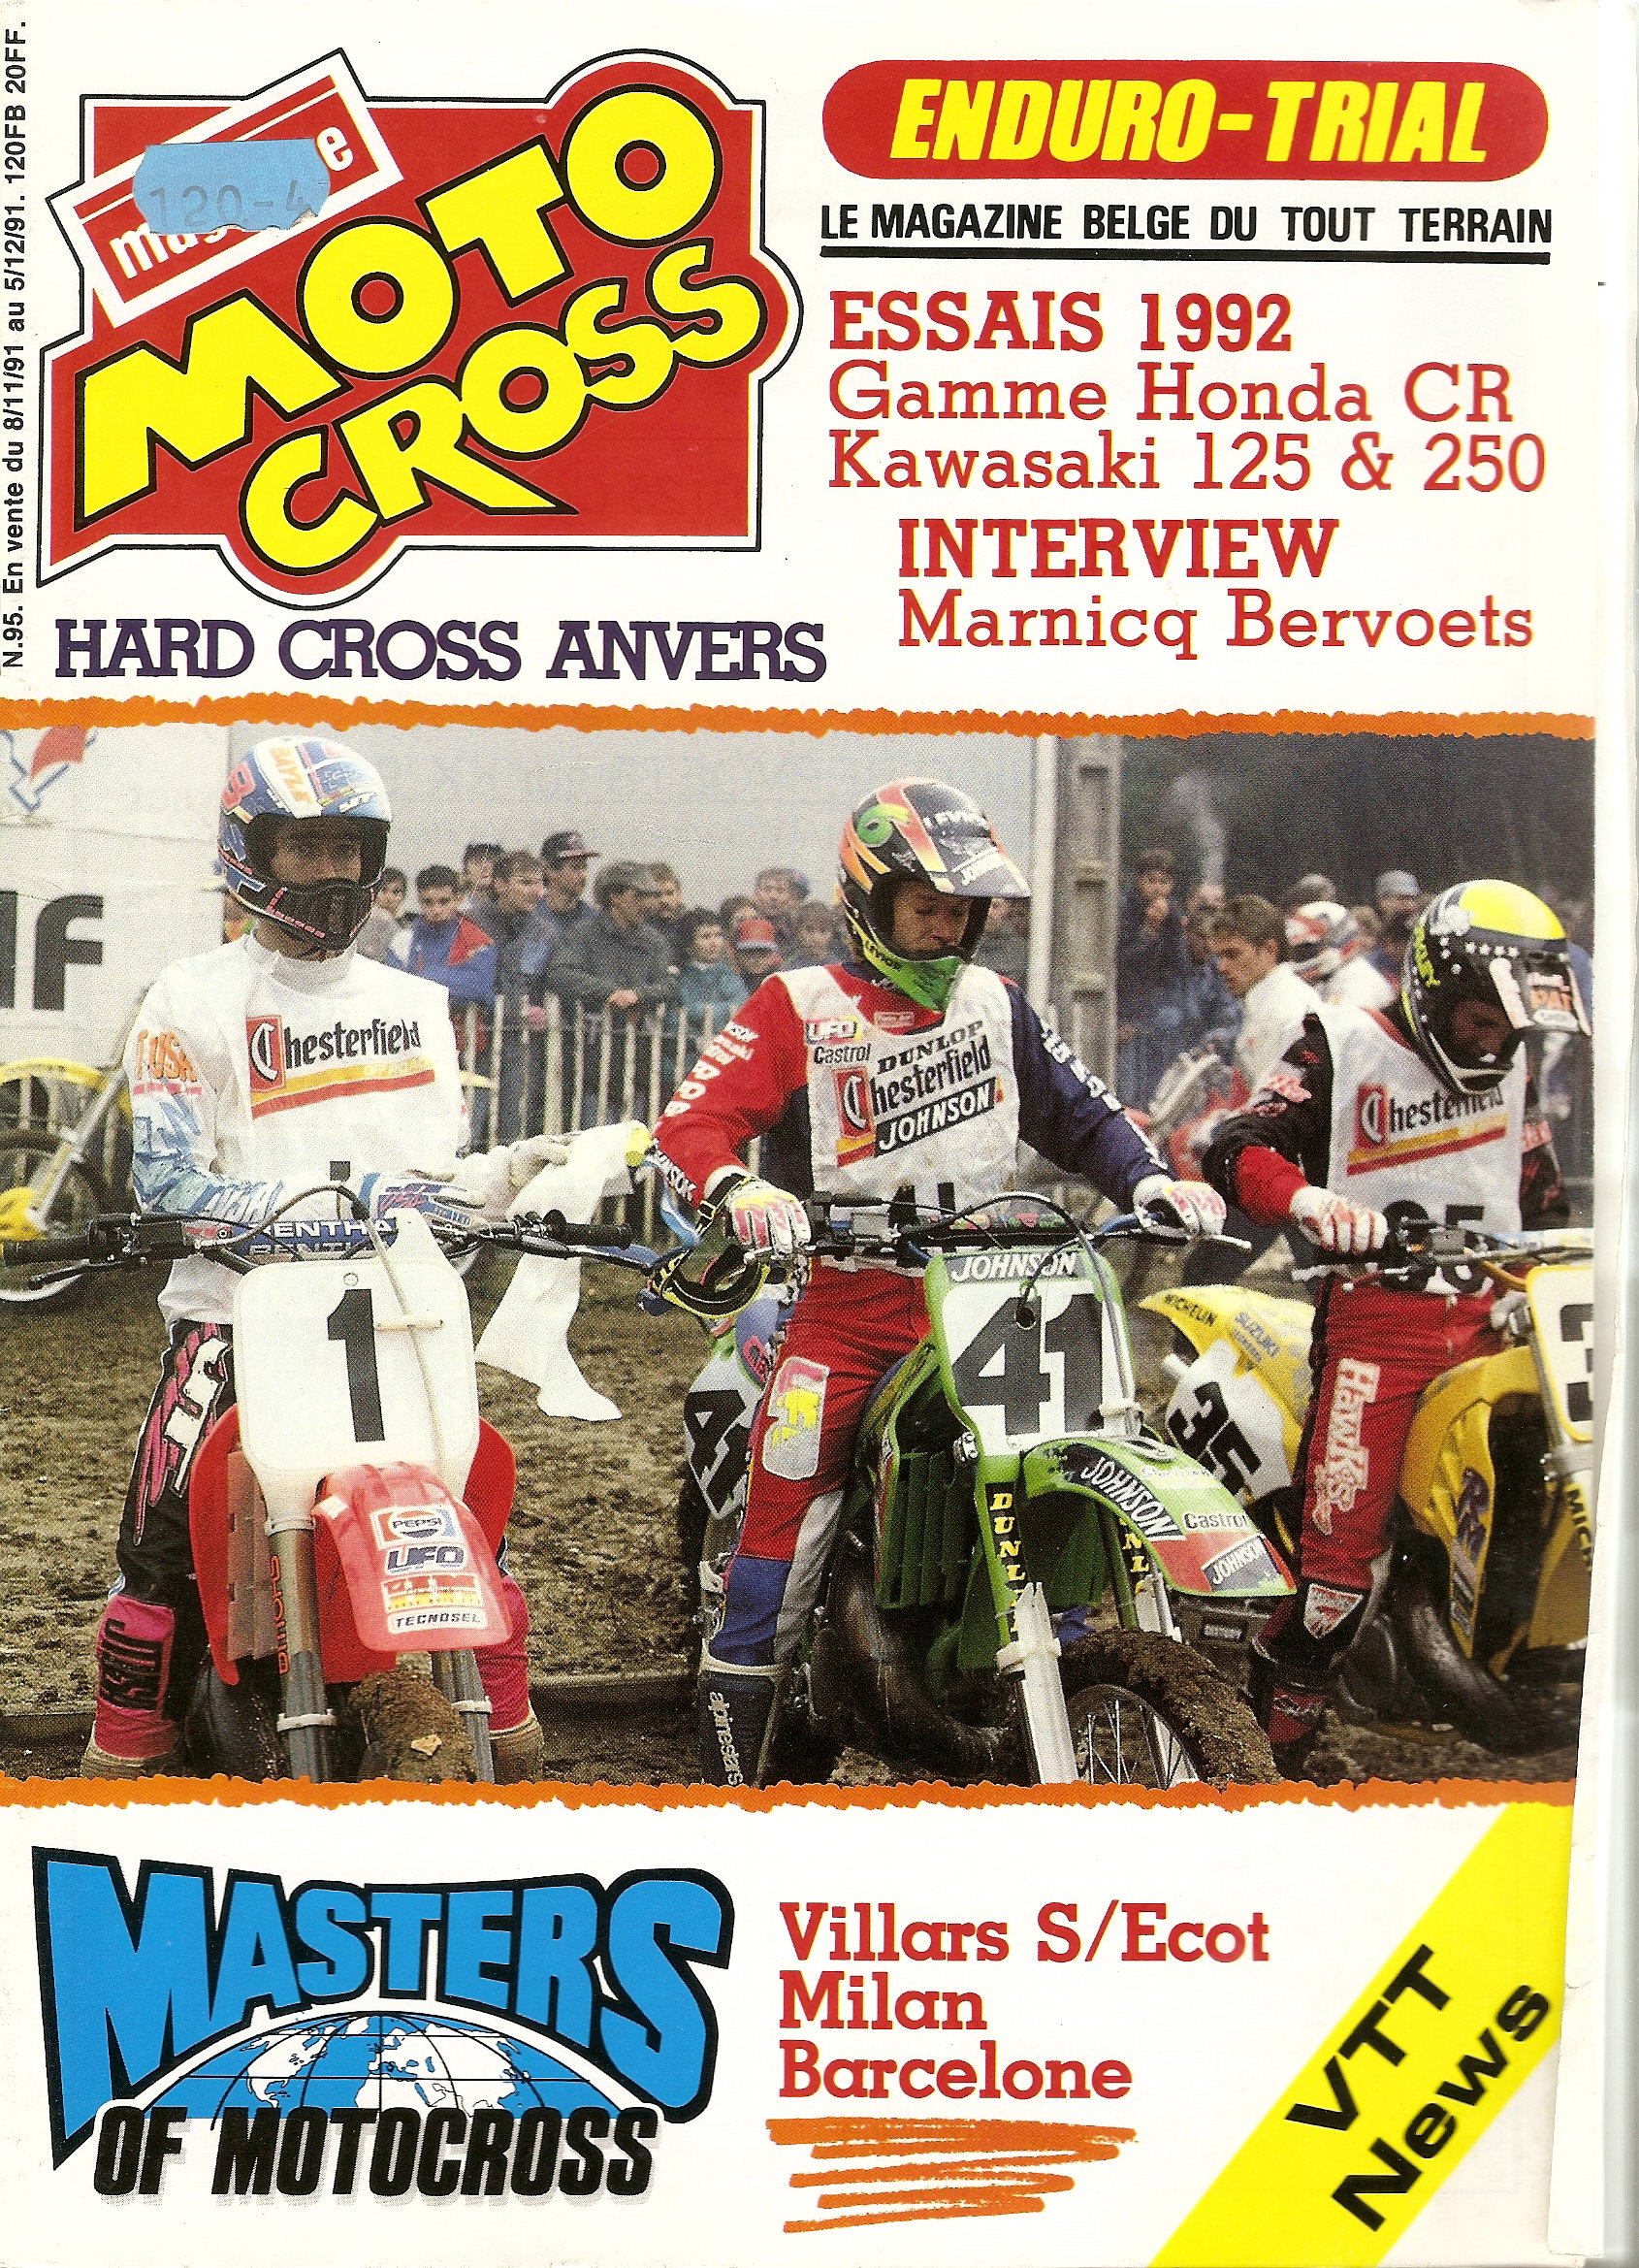 Le magazine Belge Moto cross met JMB à l'honneur suite à cette épreuve de Villars